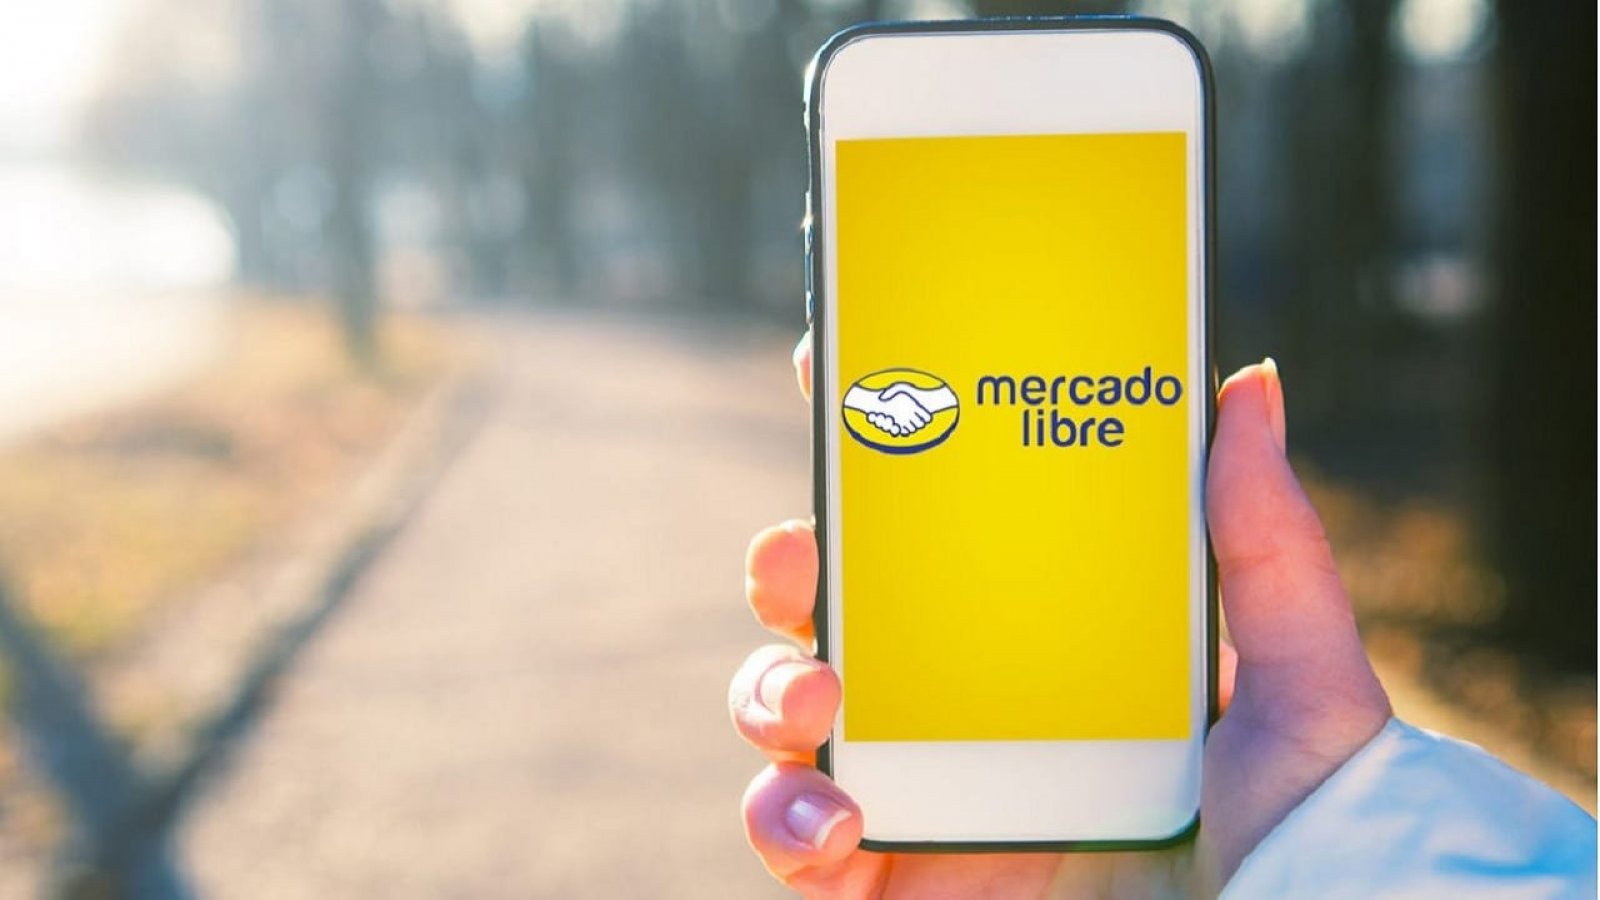 Mano sosteniendo celular con app de Mercado Libre abierta